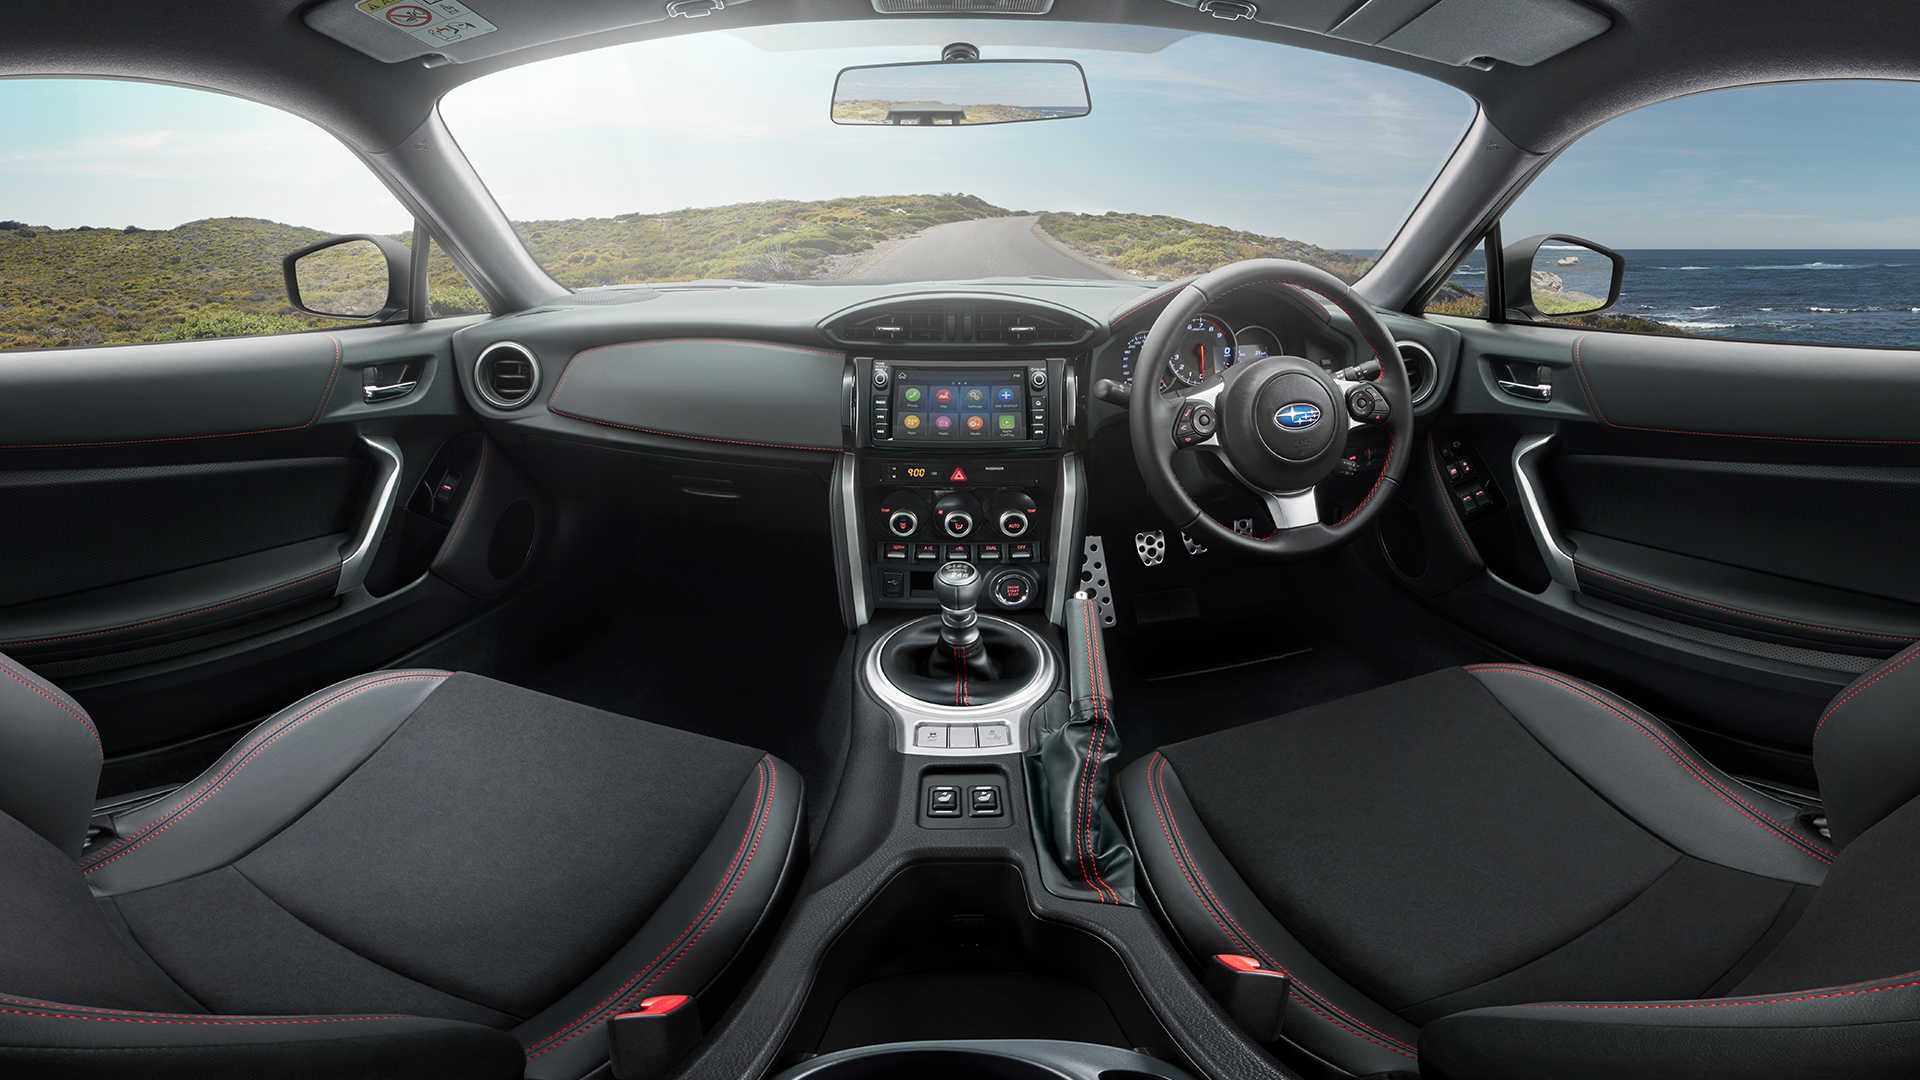 Experience a 360 View of the 2019 Subaru BRZ Interior | Subaru